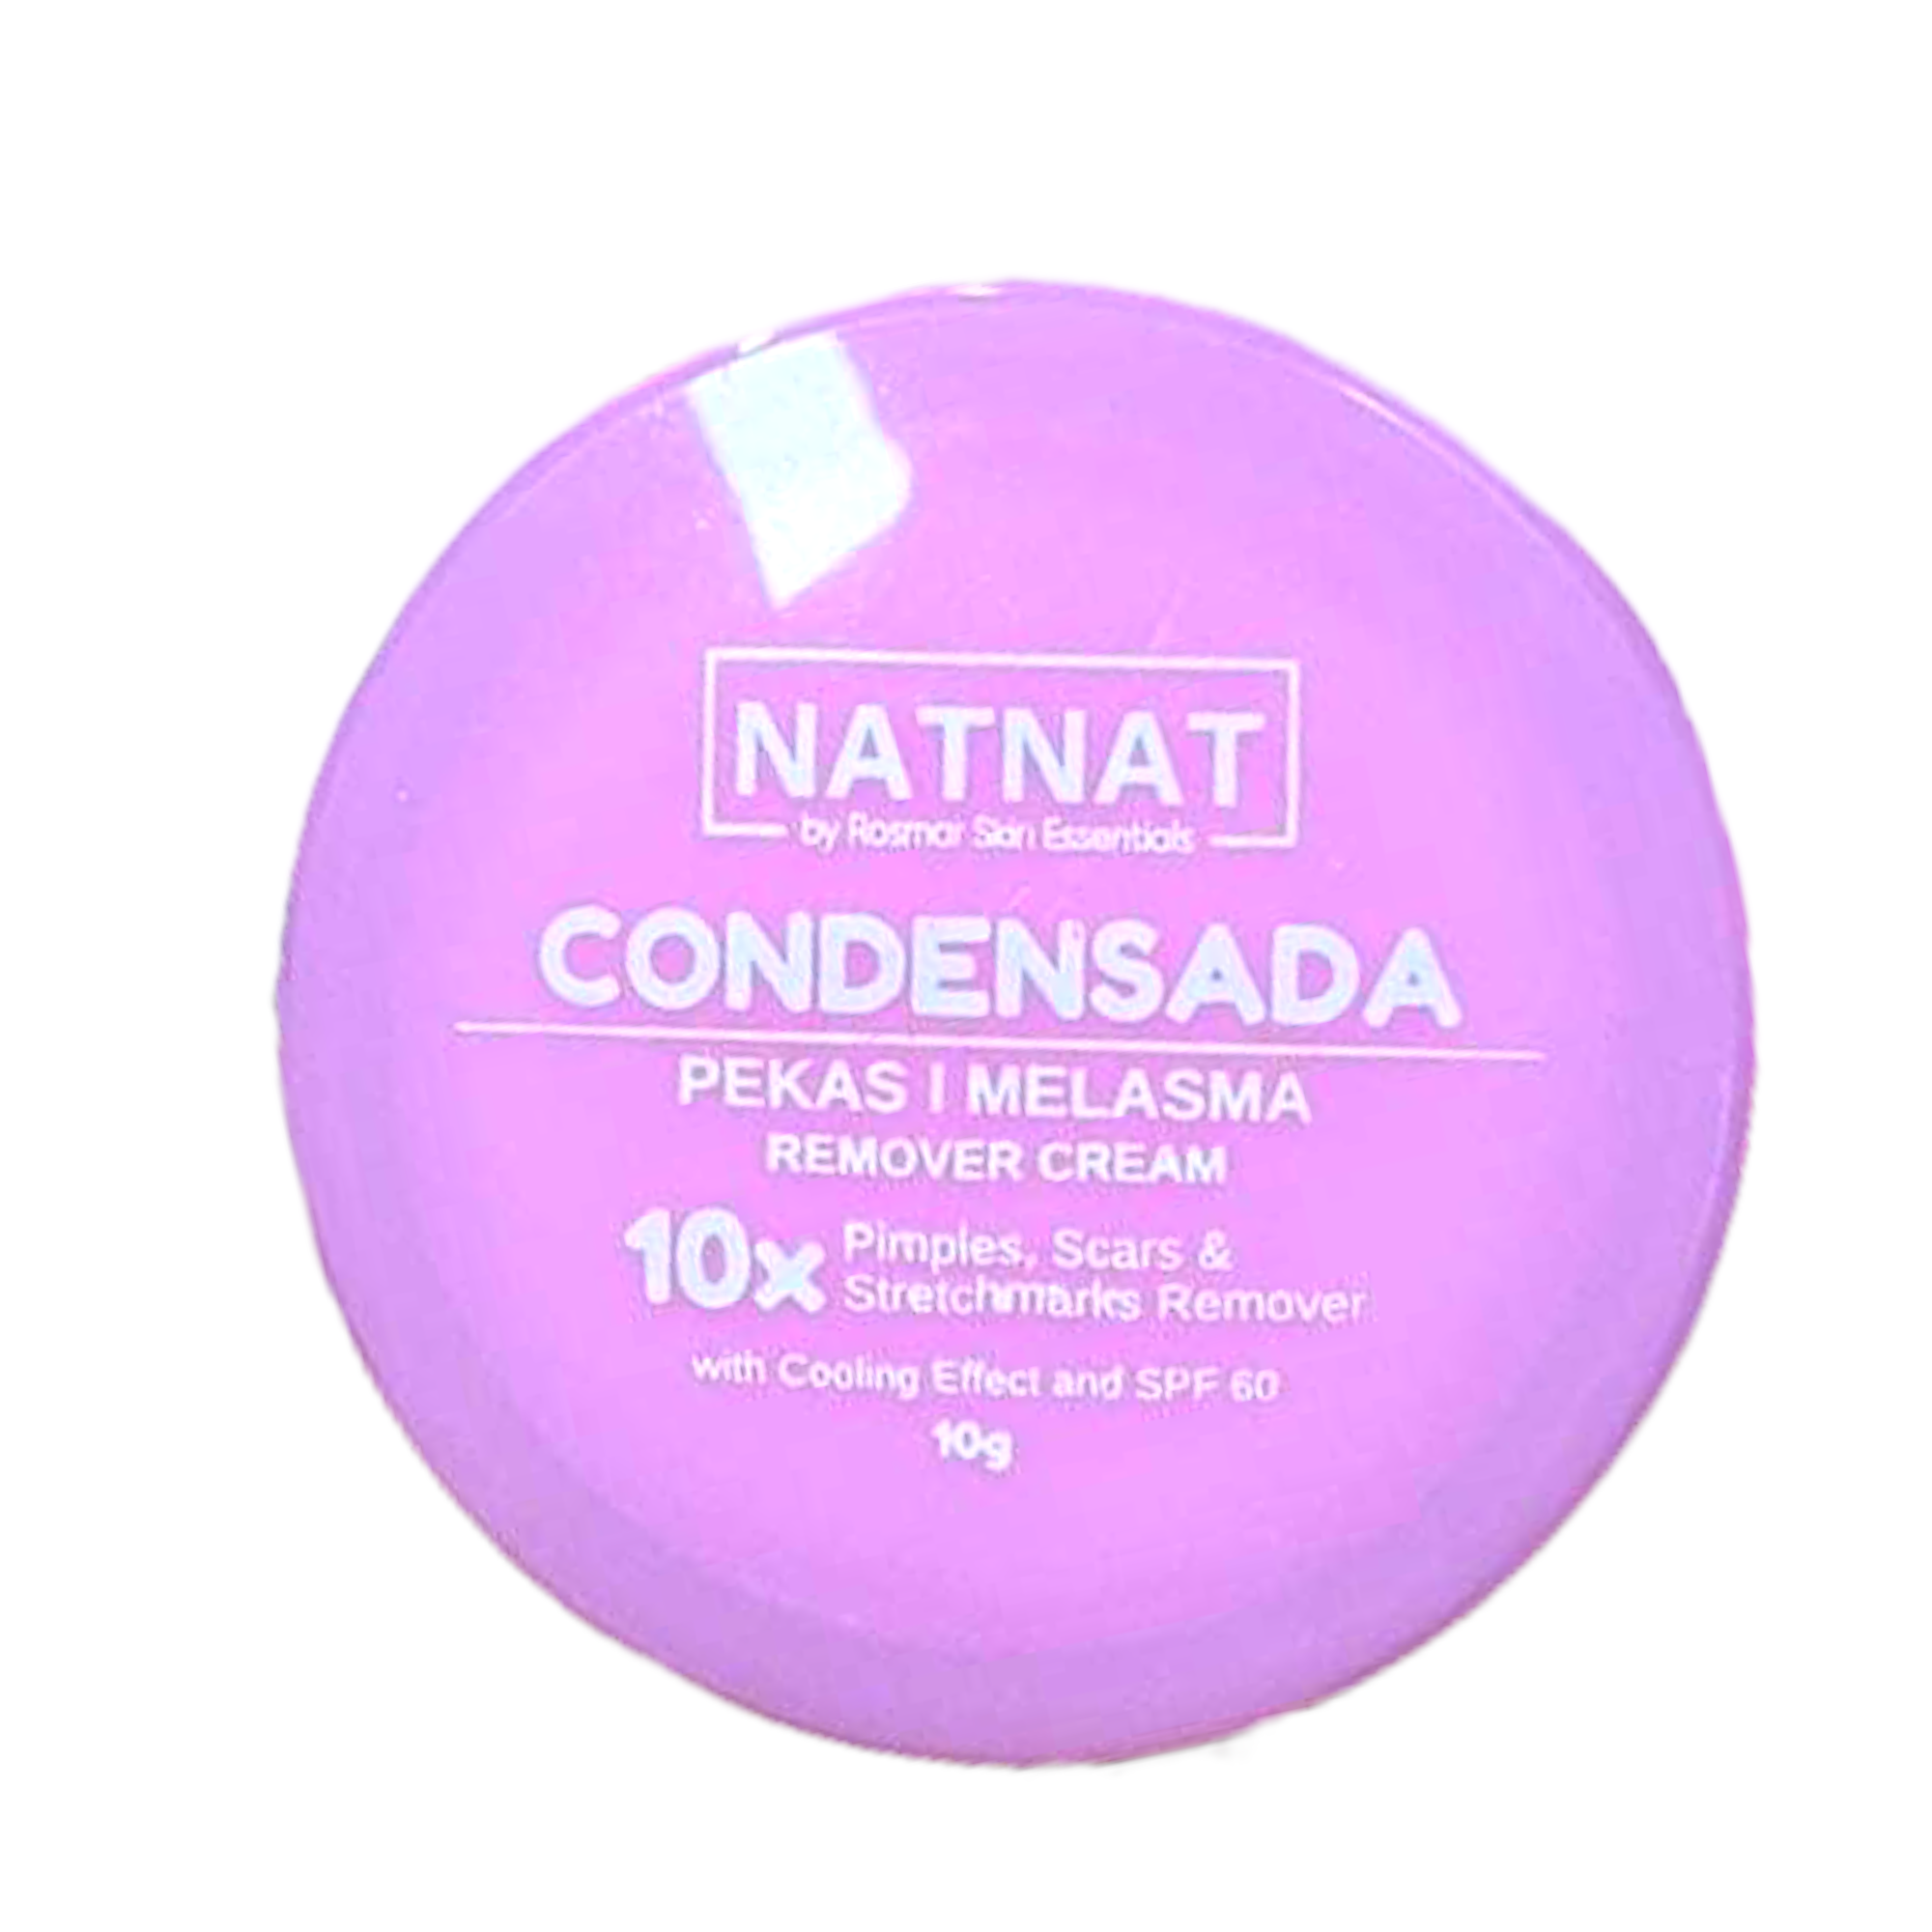 NatNat Condensada - Pekas / Melasma Remover Cream 10g